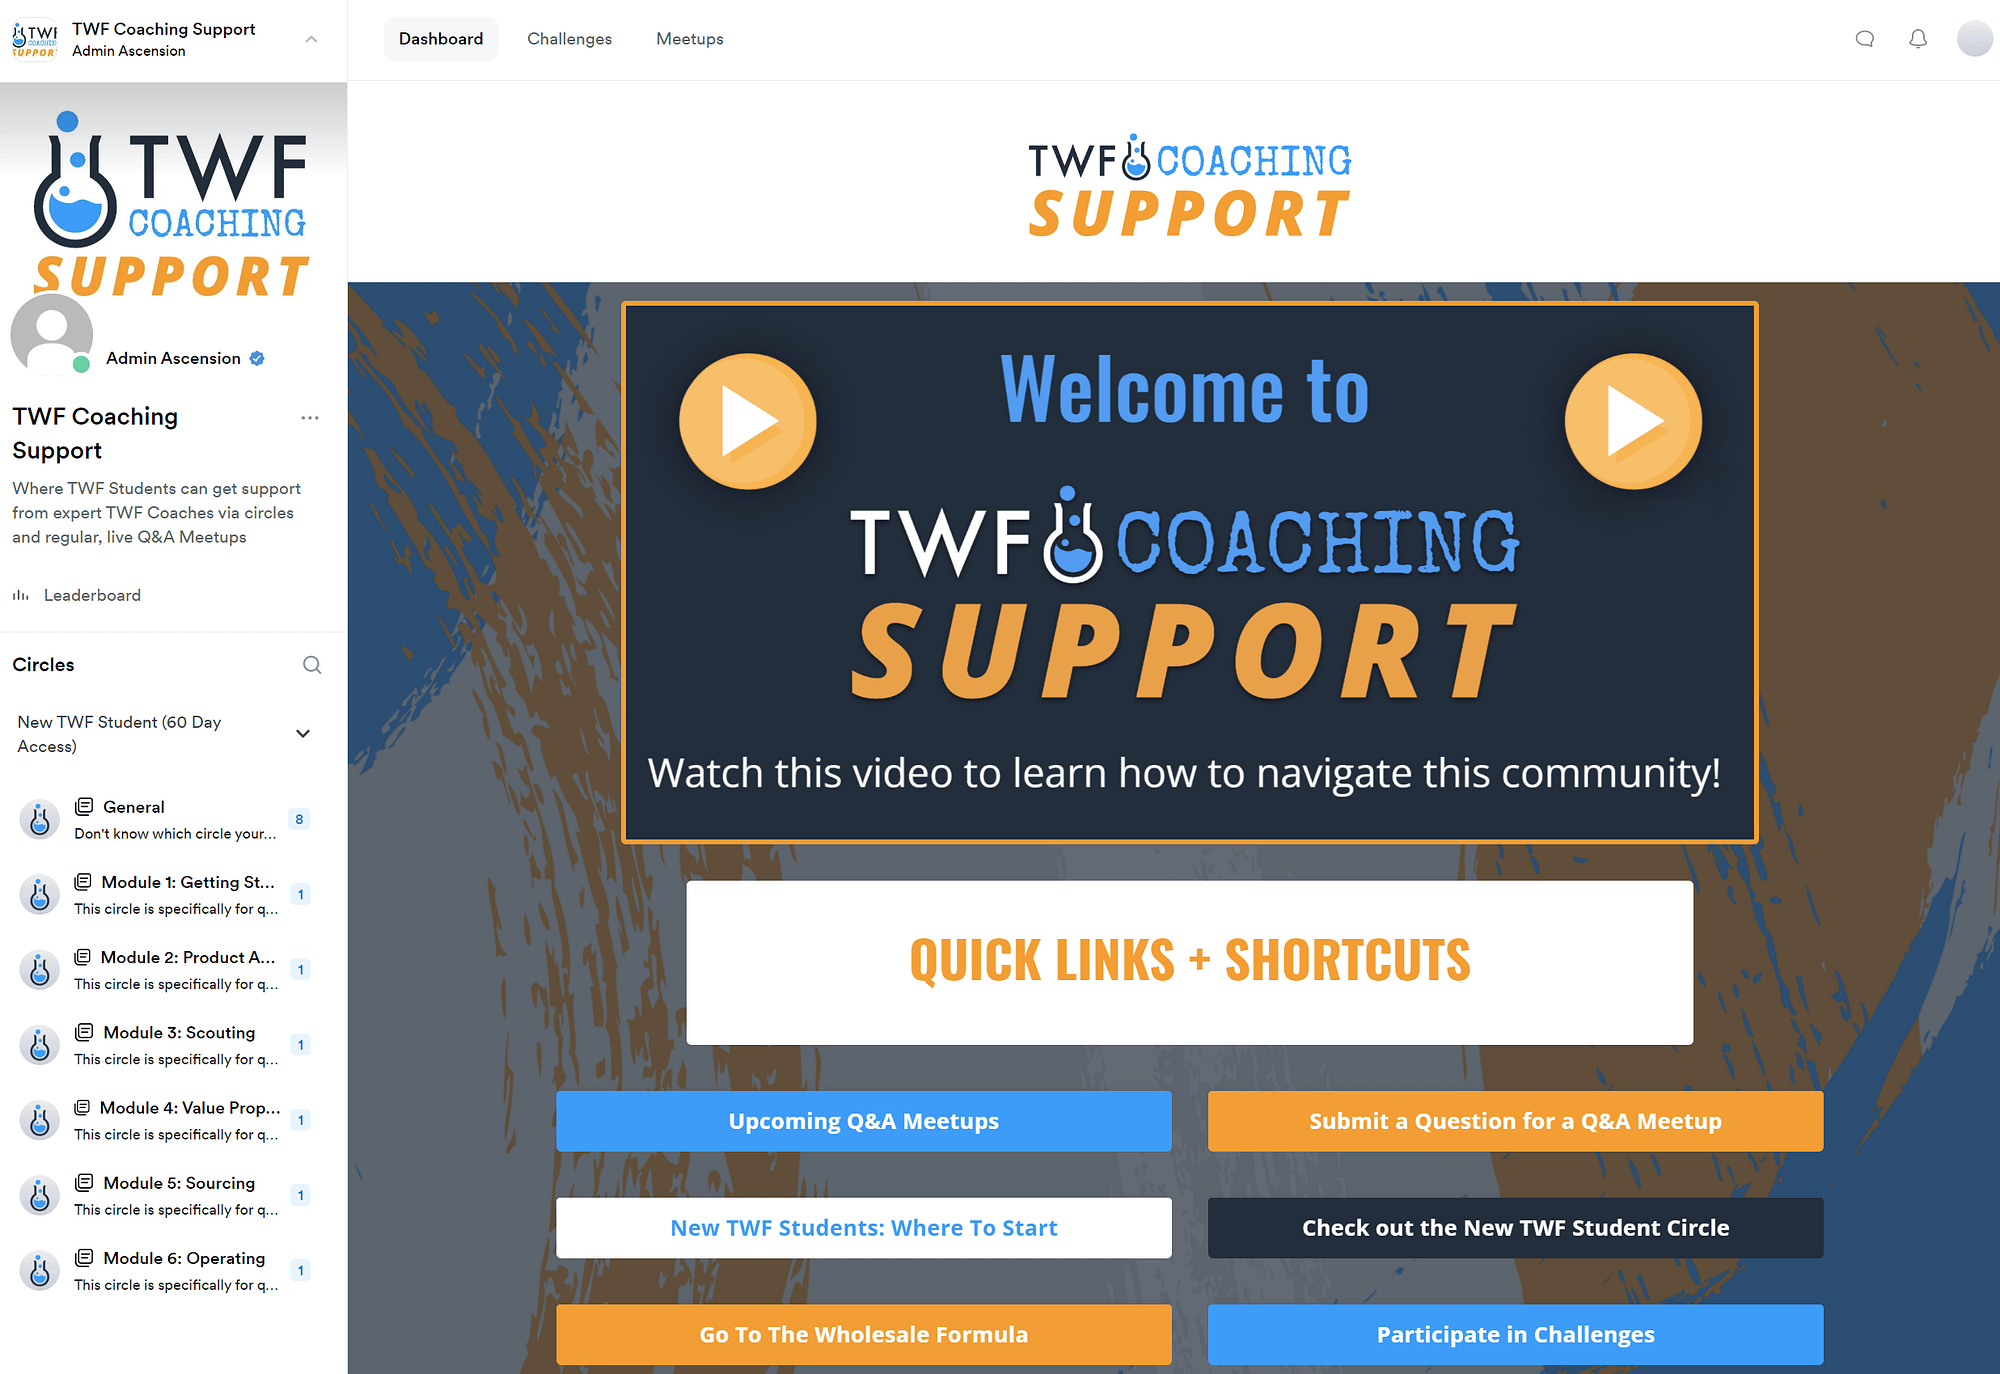 TWF Coaching Support Dashboard